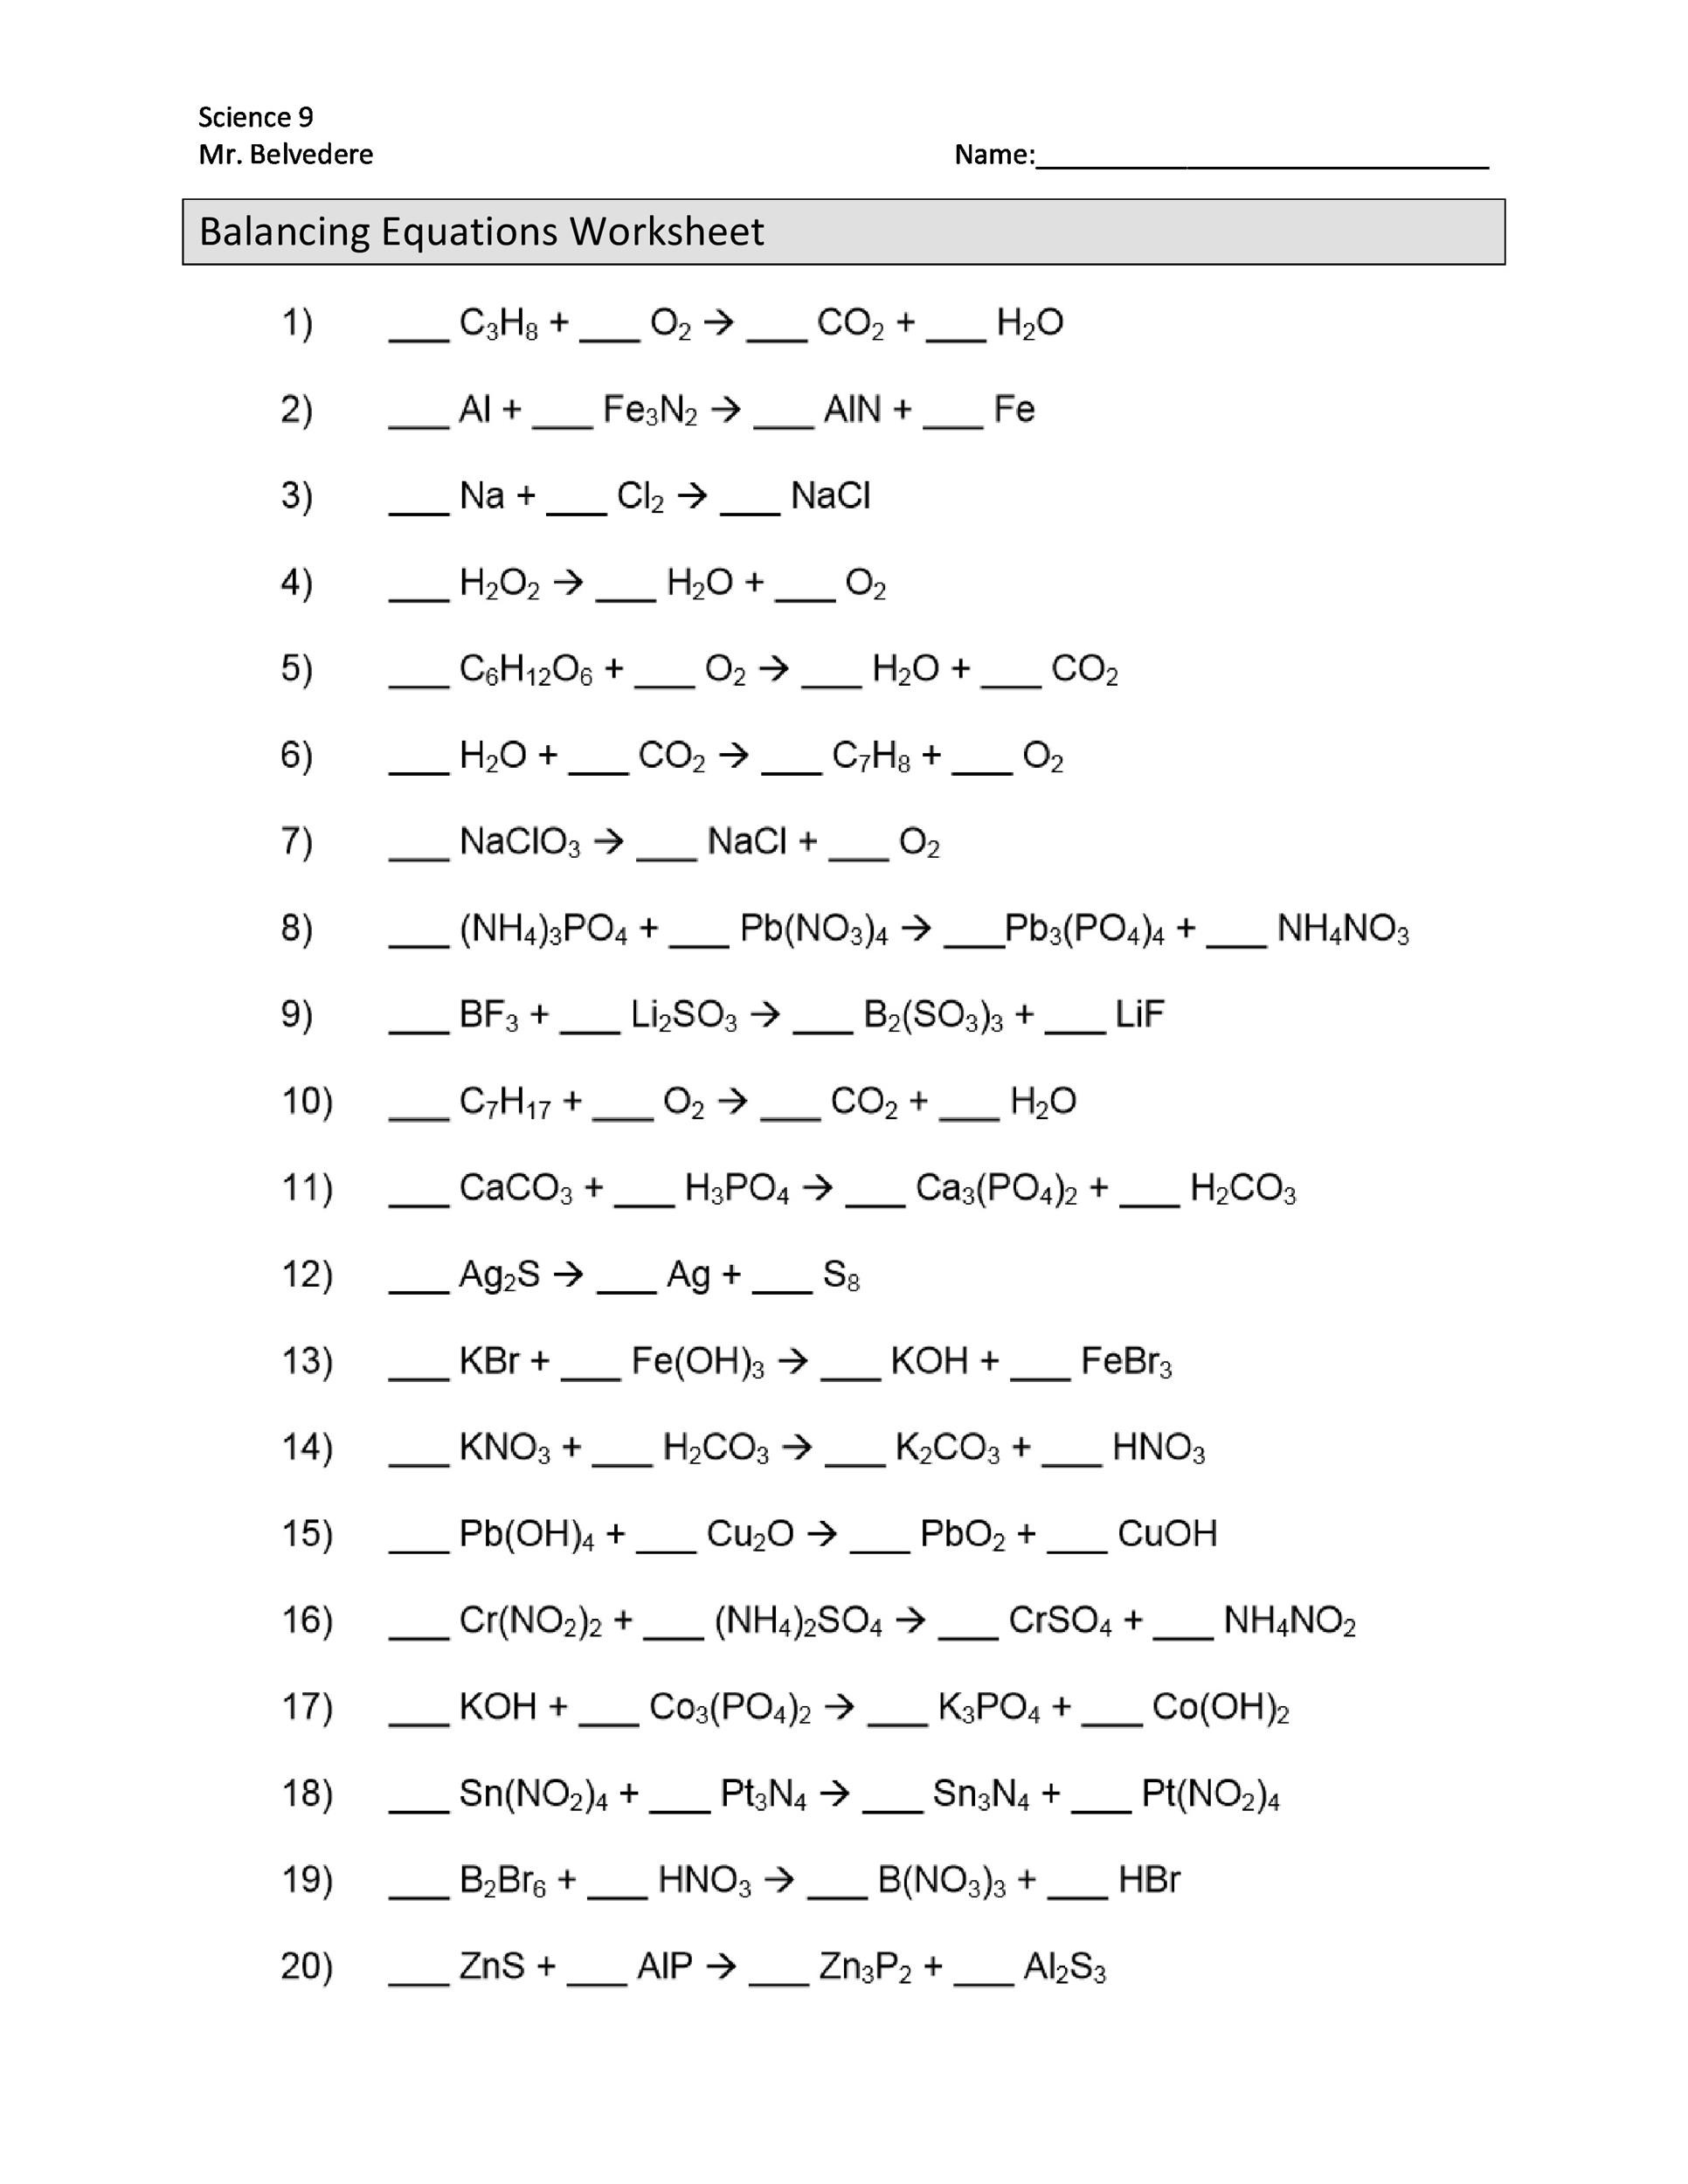 Balancing Equations Worksheet Answers 49 Balancing Chemical Equations Worksheets [with Answers]